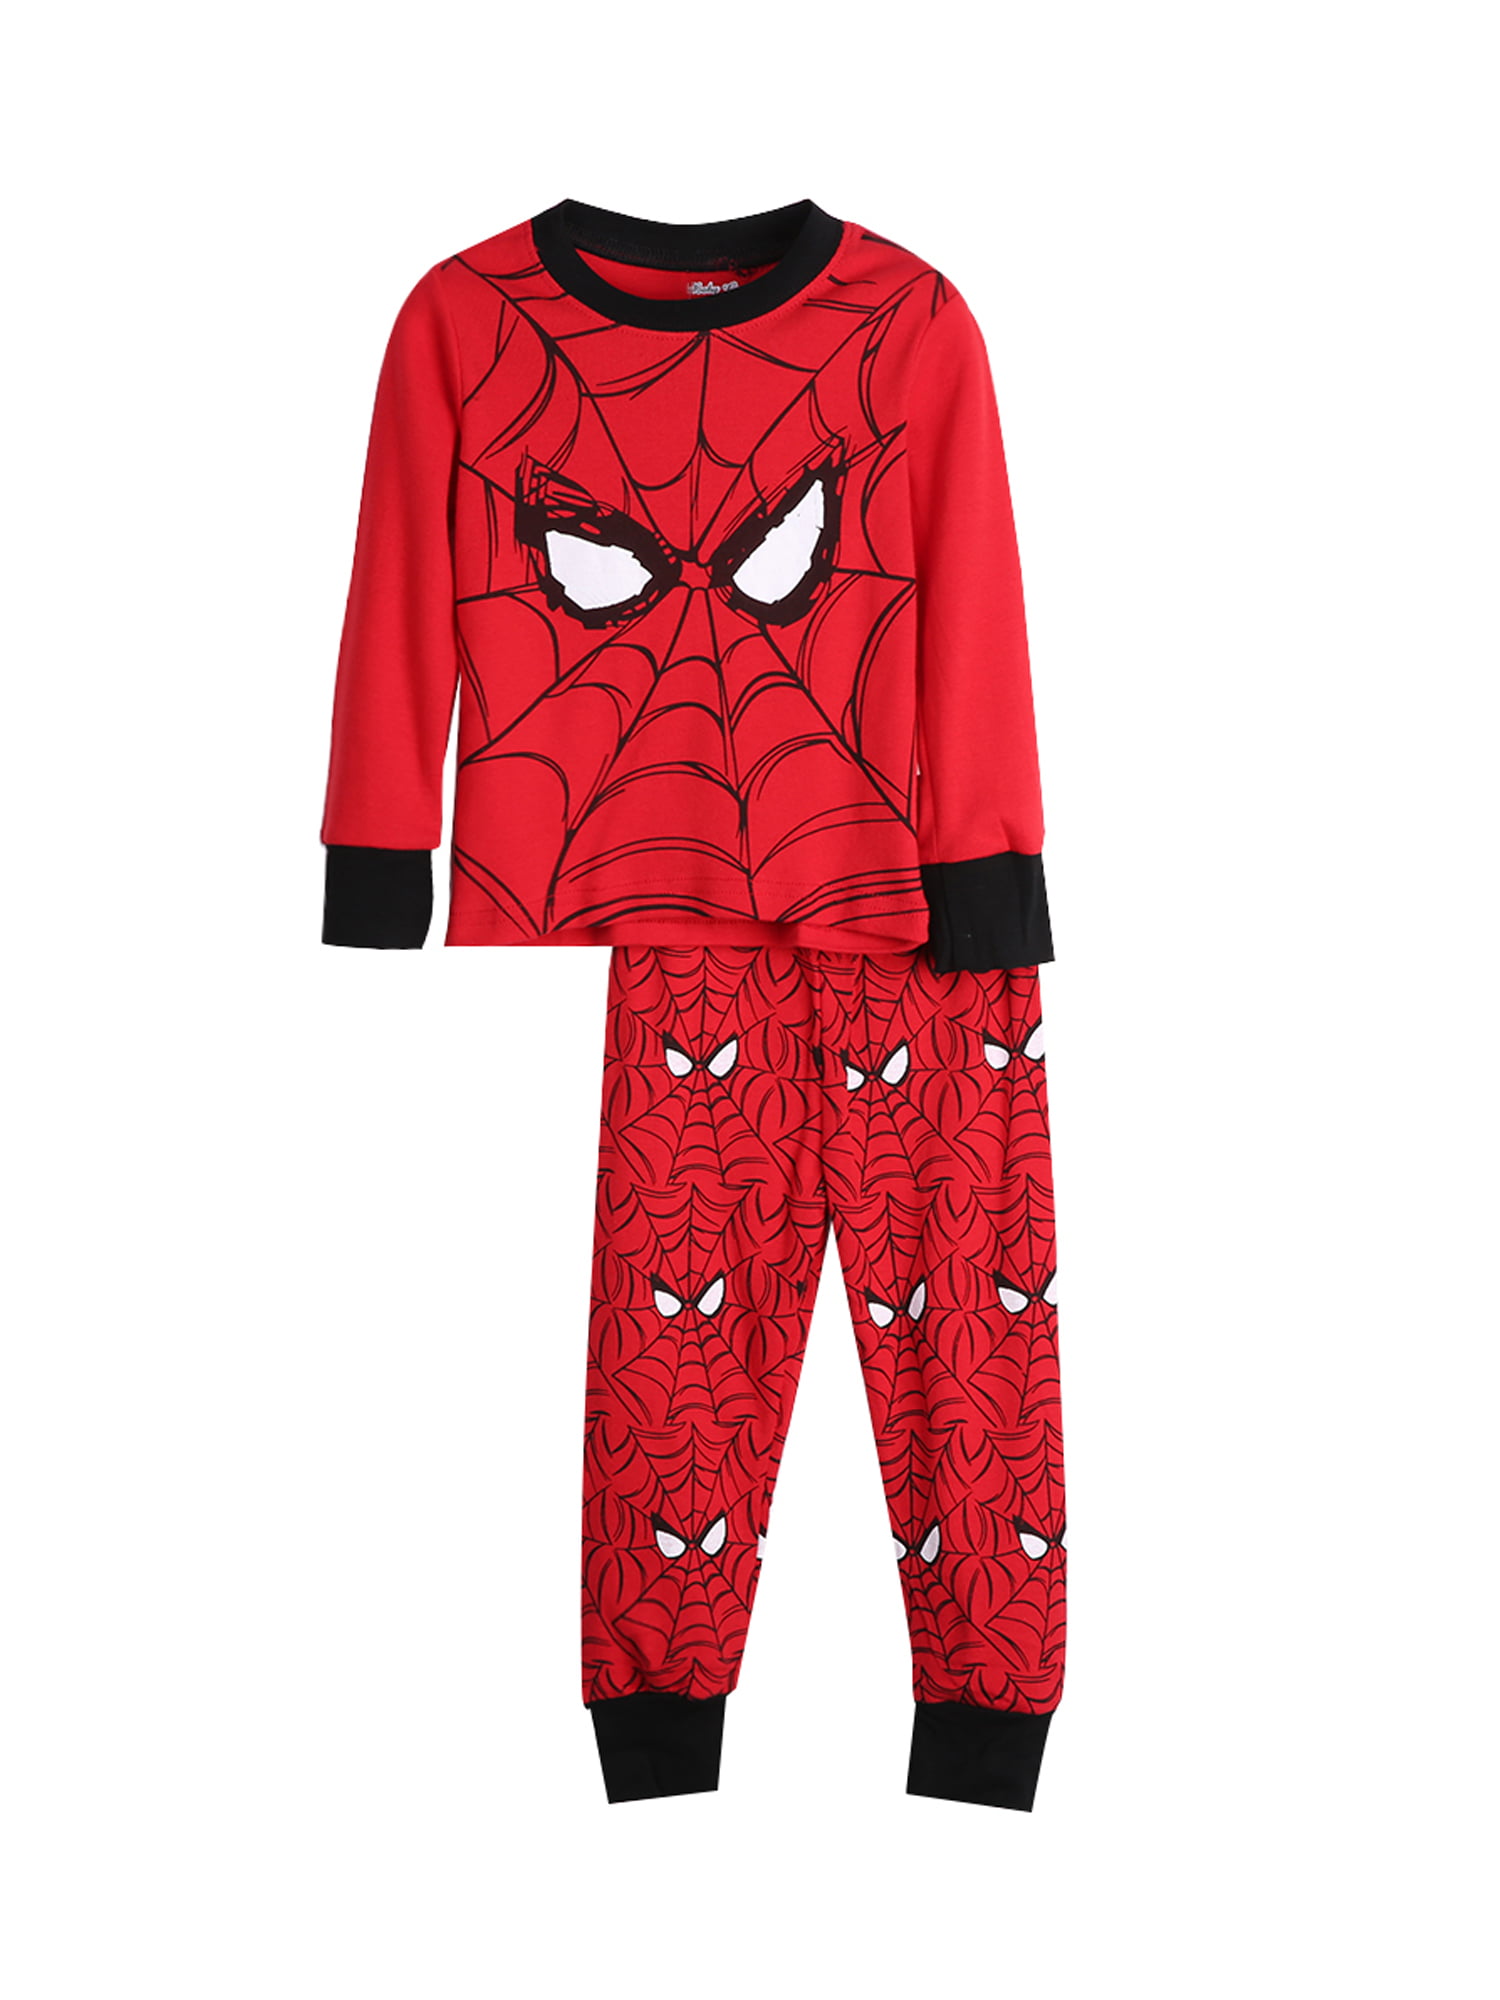 Details about   Disney Store Spiderman Spider Man 2 Piece Pajama Gift Set Sz 3T 